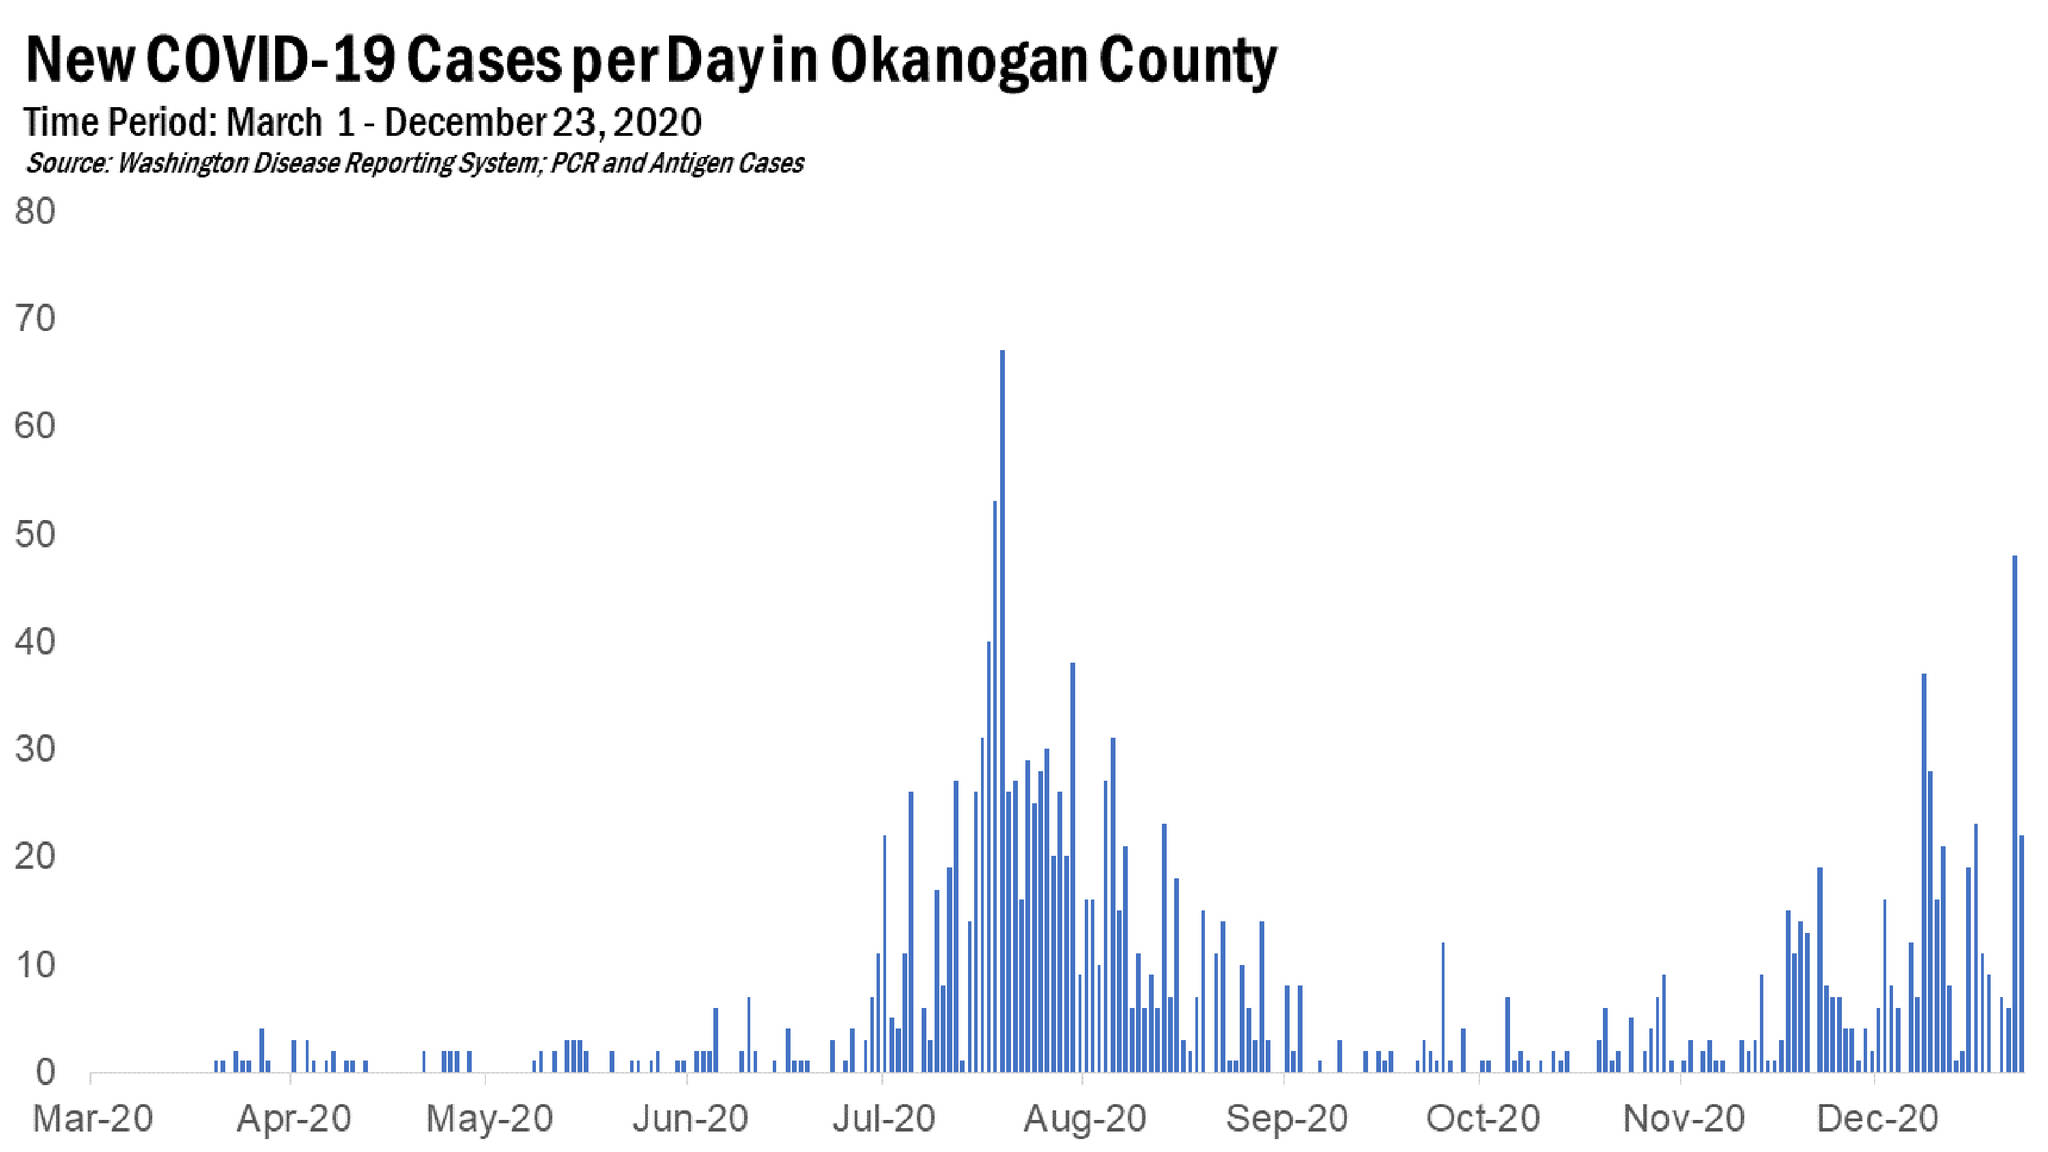 New COVID-19 Cases per day in Okanogan County